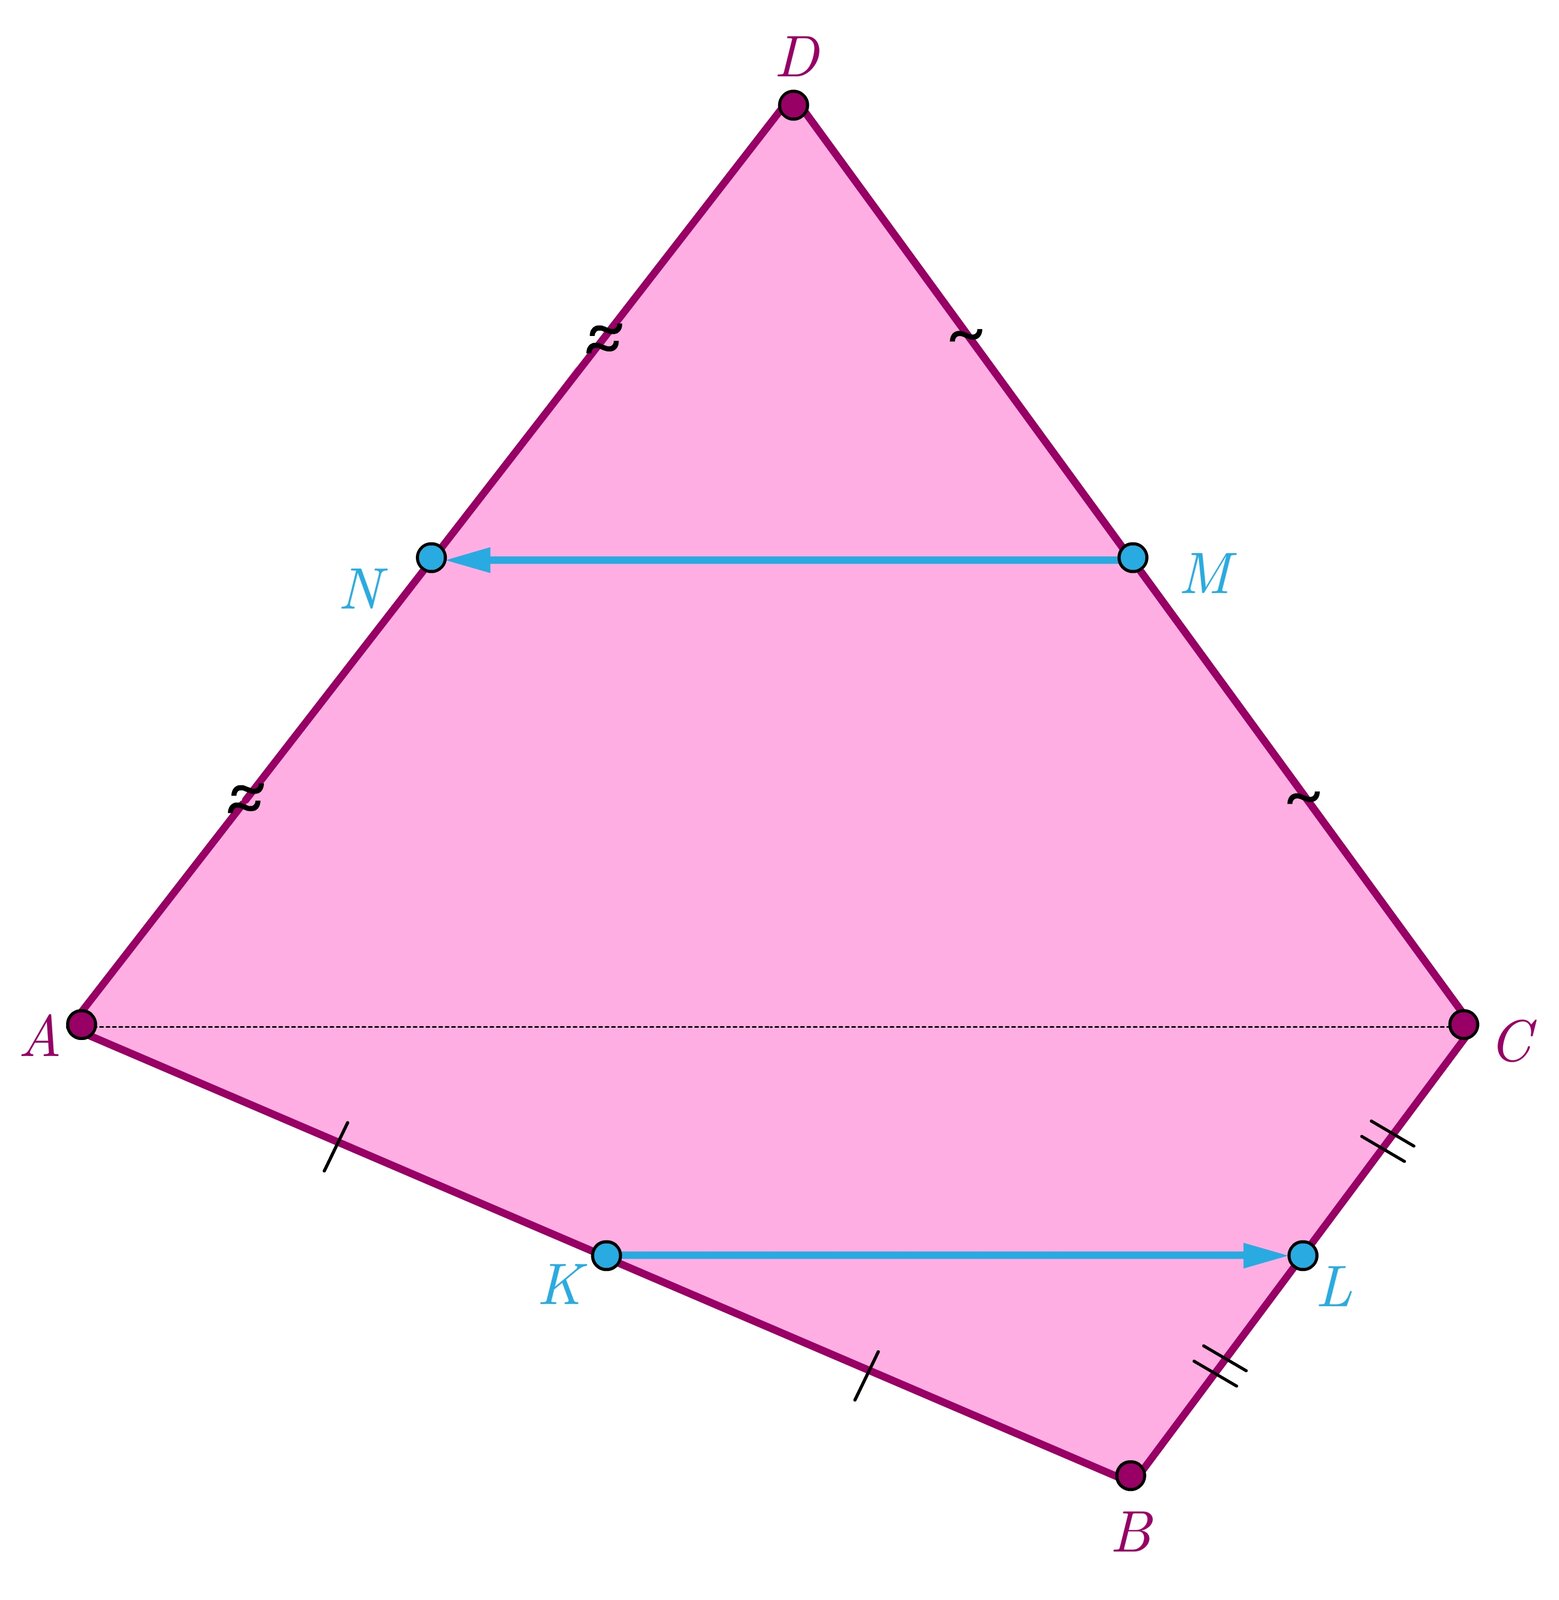 Ilustracja przedstawia czworokąt wypukły A B C D. W połowie odcinka A D zaznaczono punkt N, w połowie odcinka D C zaznaczono punkt M, w połowie odcinka B C zaznaczono punkt L, w połowie odcinka A B zaznaczono punkt K. Zaznaczono wektory: KL→ oraz MN→.